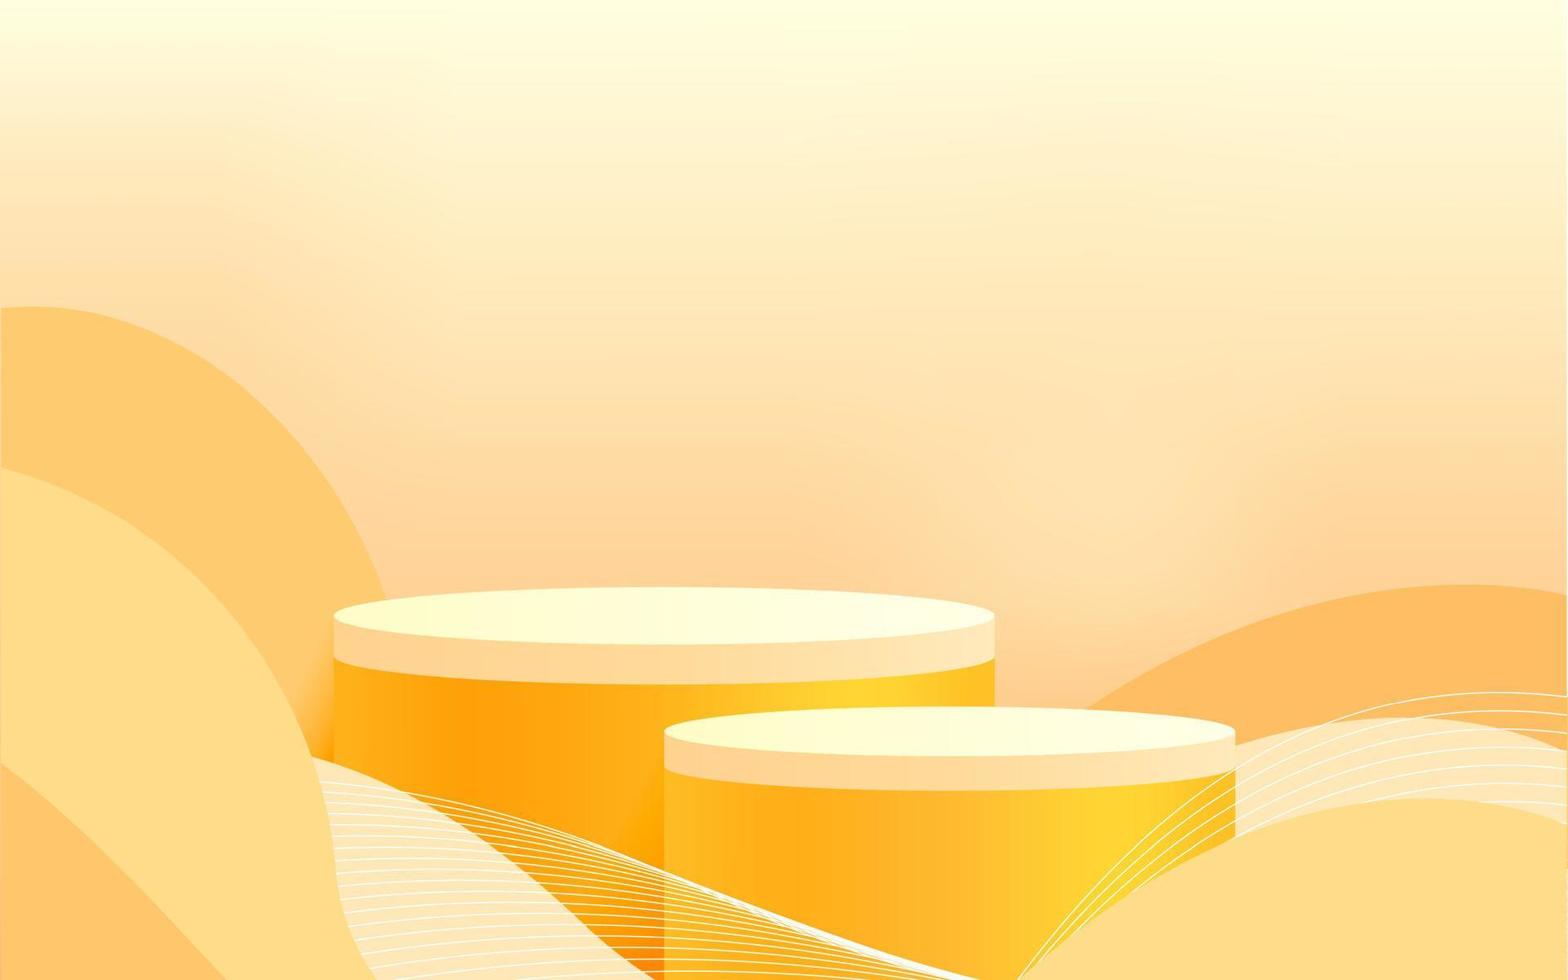 pódio de suporte de cilindro 3d abstrato com decoração de curva de linha amarela. fundo de cena de parede amarela para apresentação de exibição de produto, maquete, vitrine. plataforma de renderização vetorial vetor